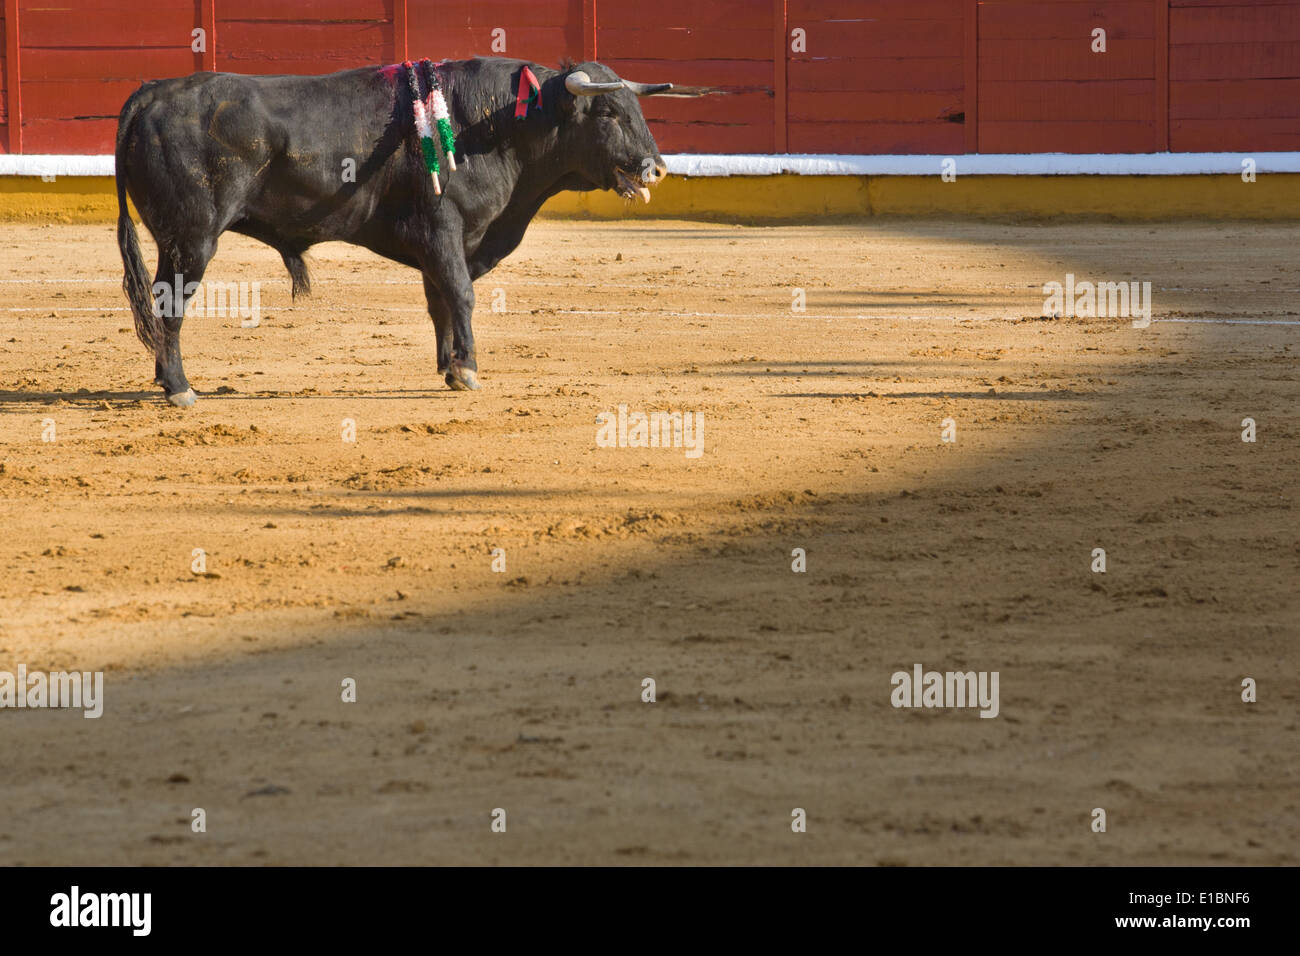 Un taureau dans une corrida espagnole typique, Badajoz, Espagne Banque D'Images